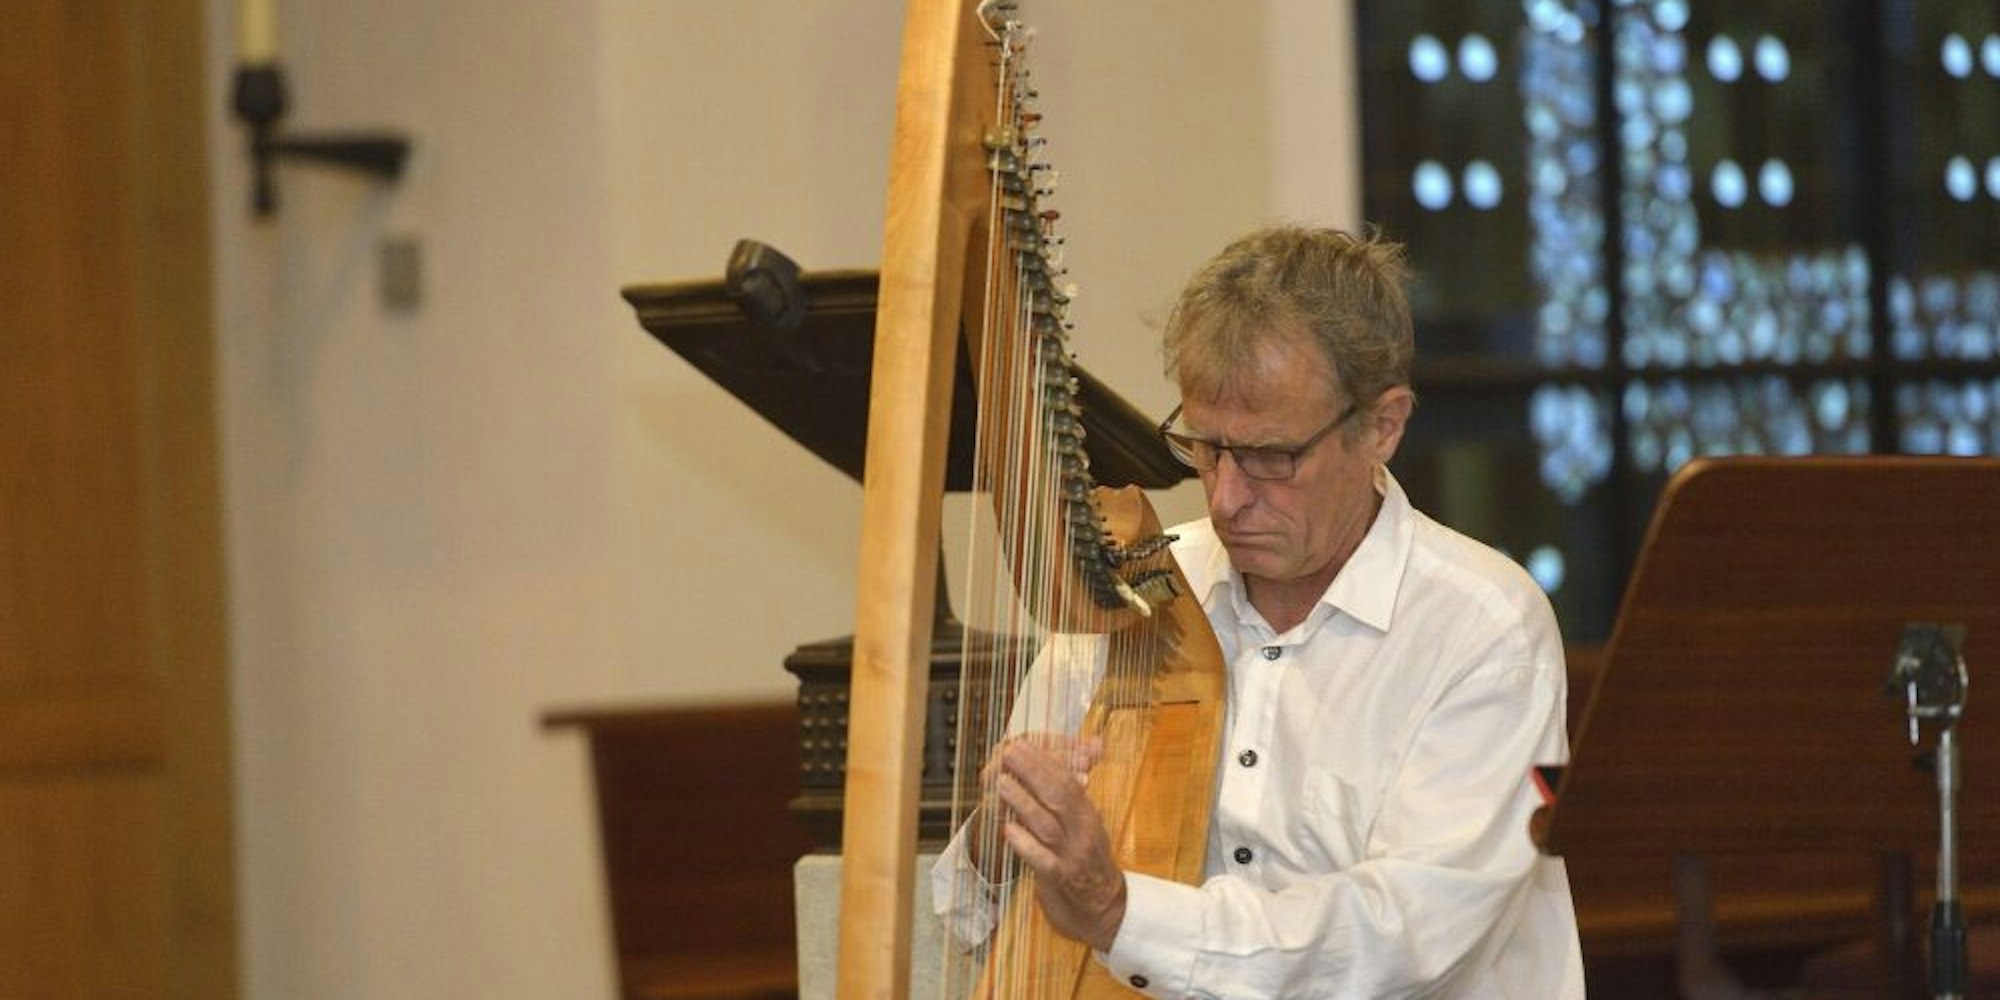 Harfenist Tom Daun spielte in St. Johann Baptist vor „vollem“ Haus.